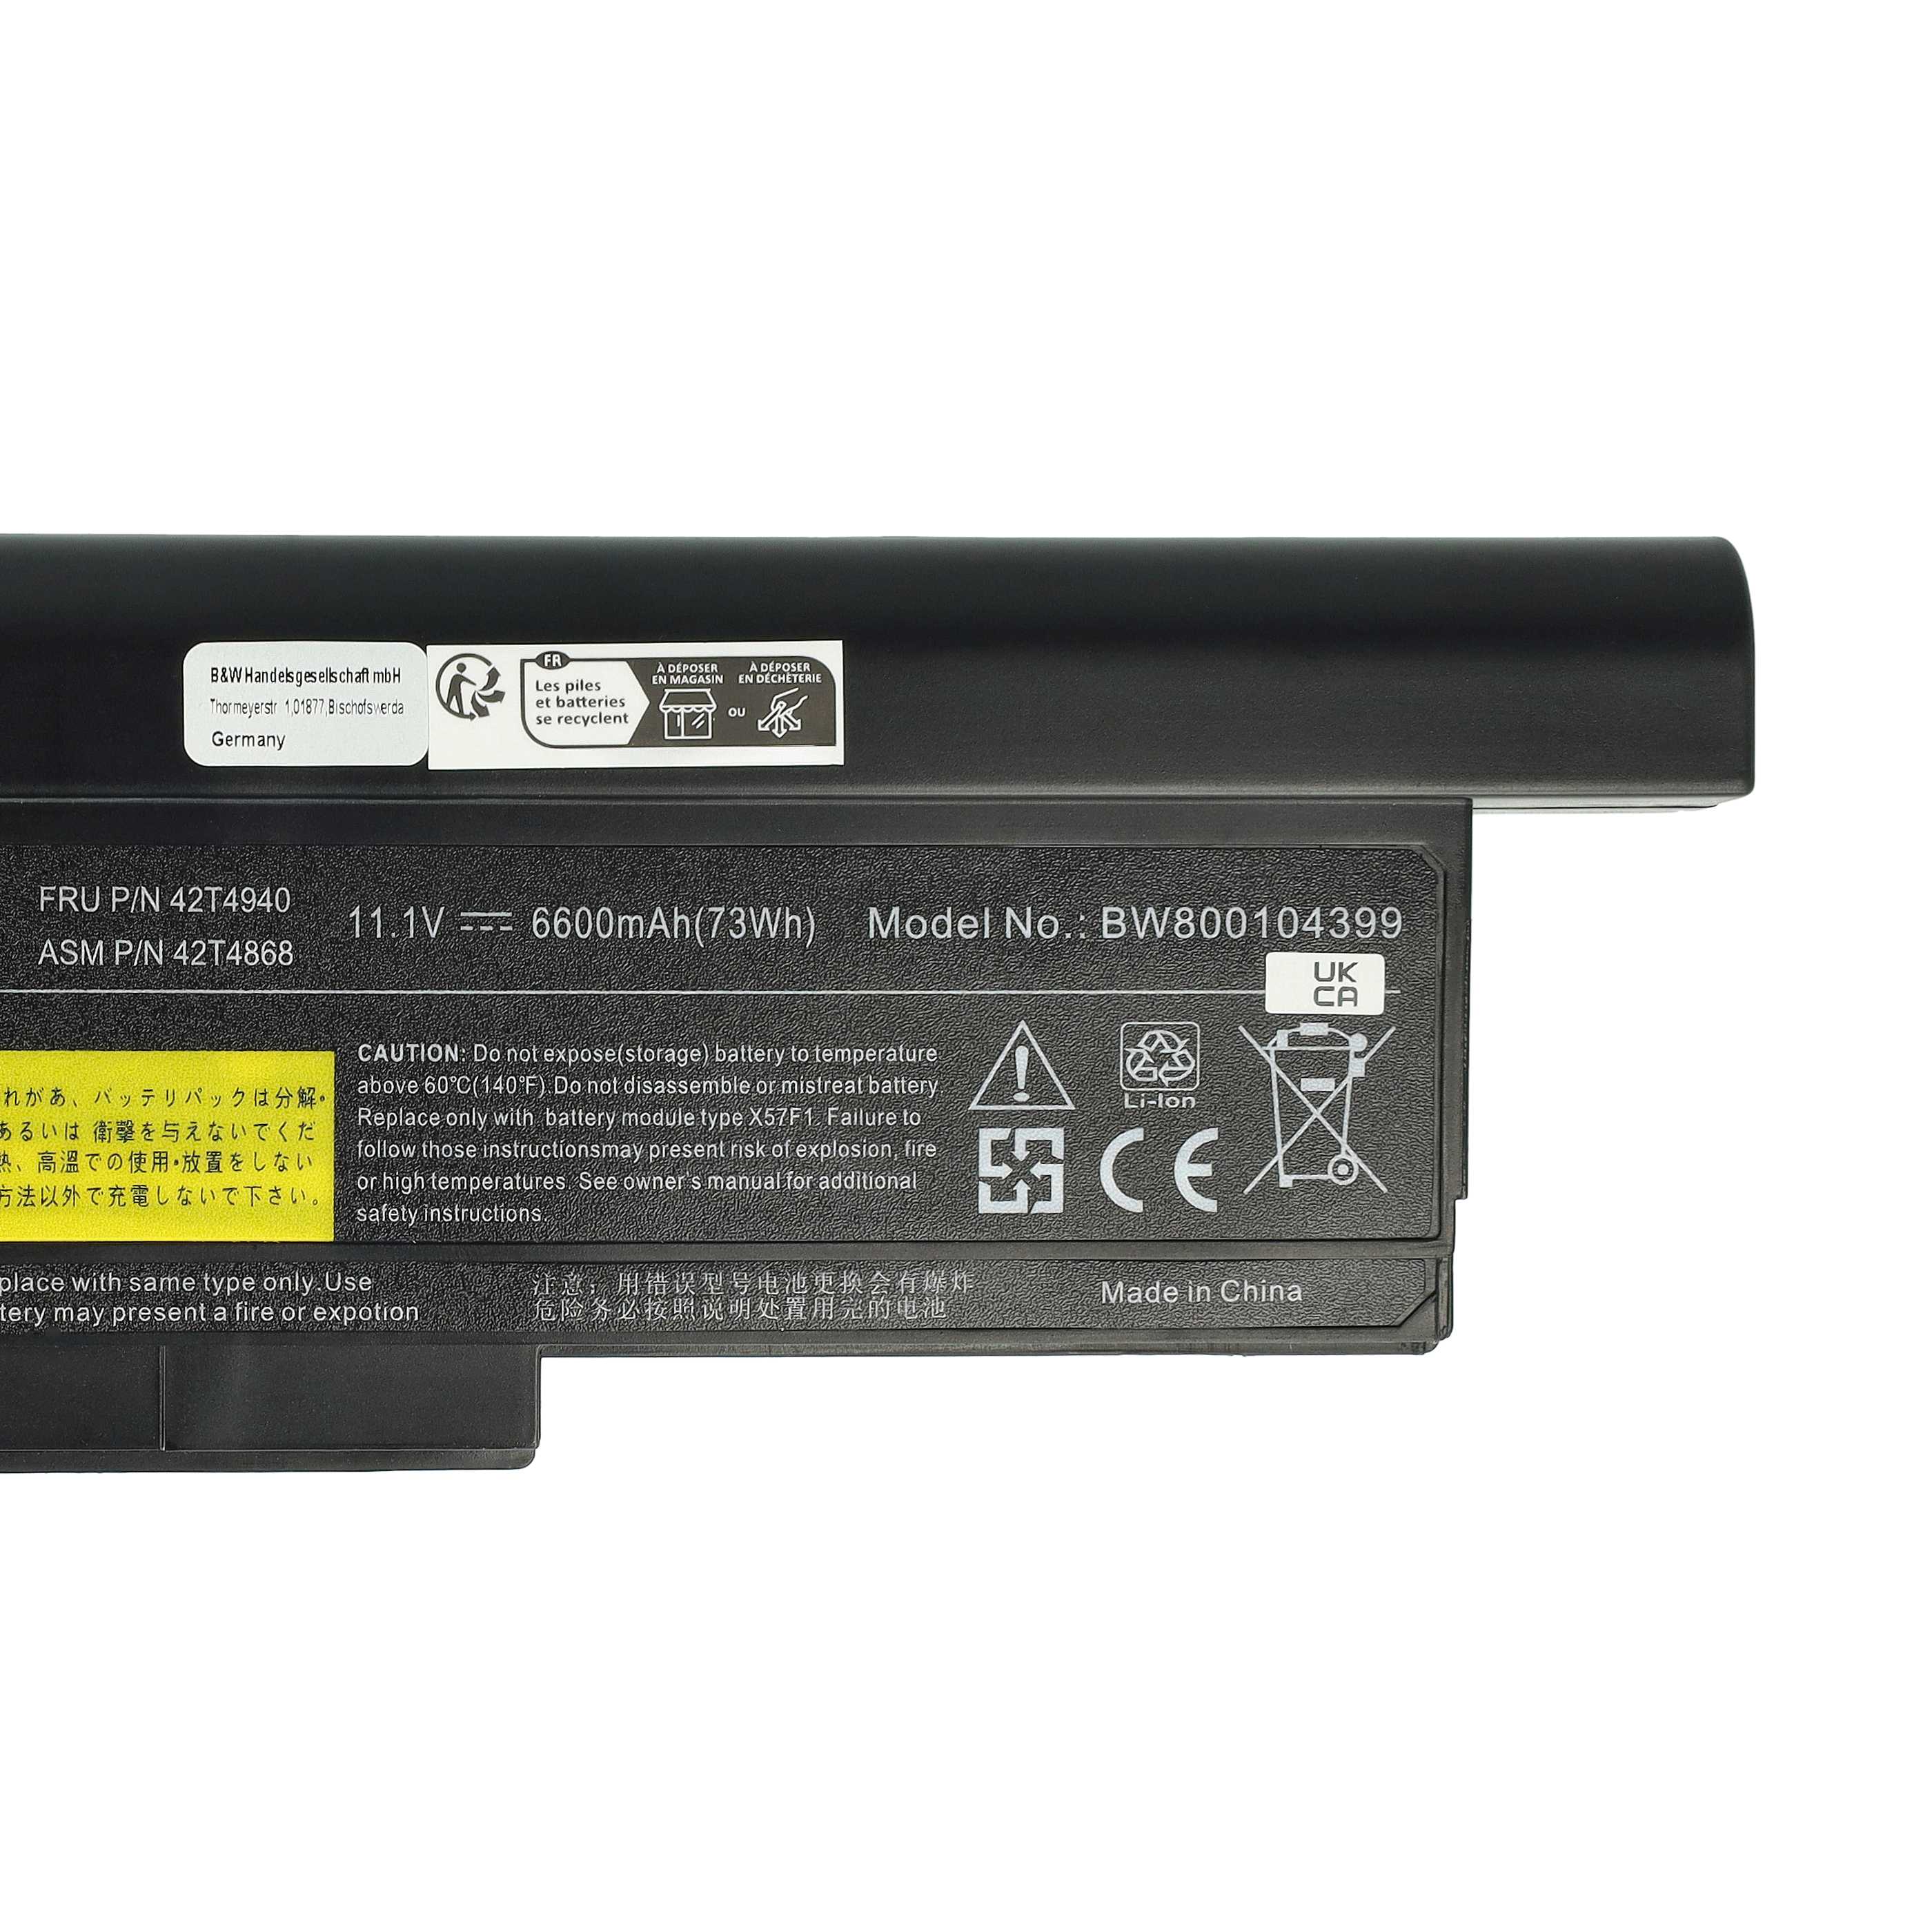 Batterie remplace Lenovo 0A36283, 0A36281, 0A36282 pour ordinateur portable - 6600mAh 10,8V Li-ion, noir